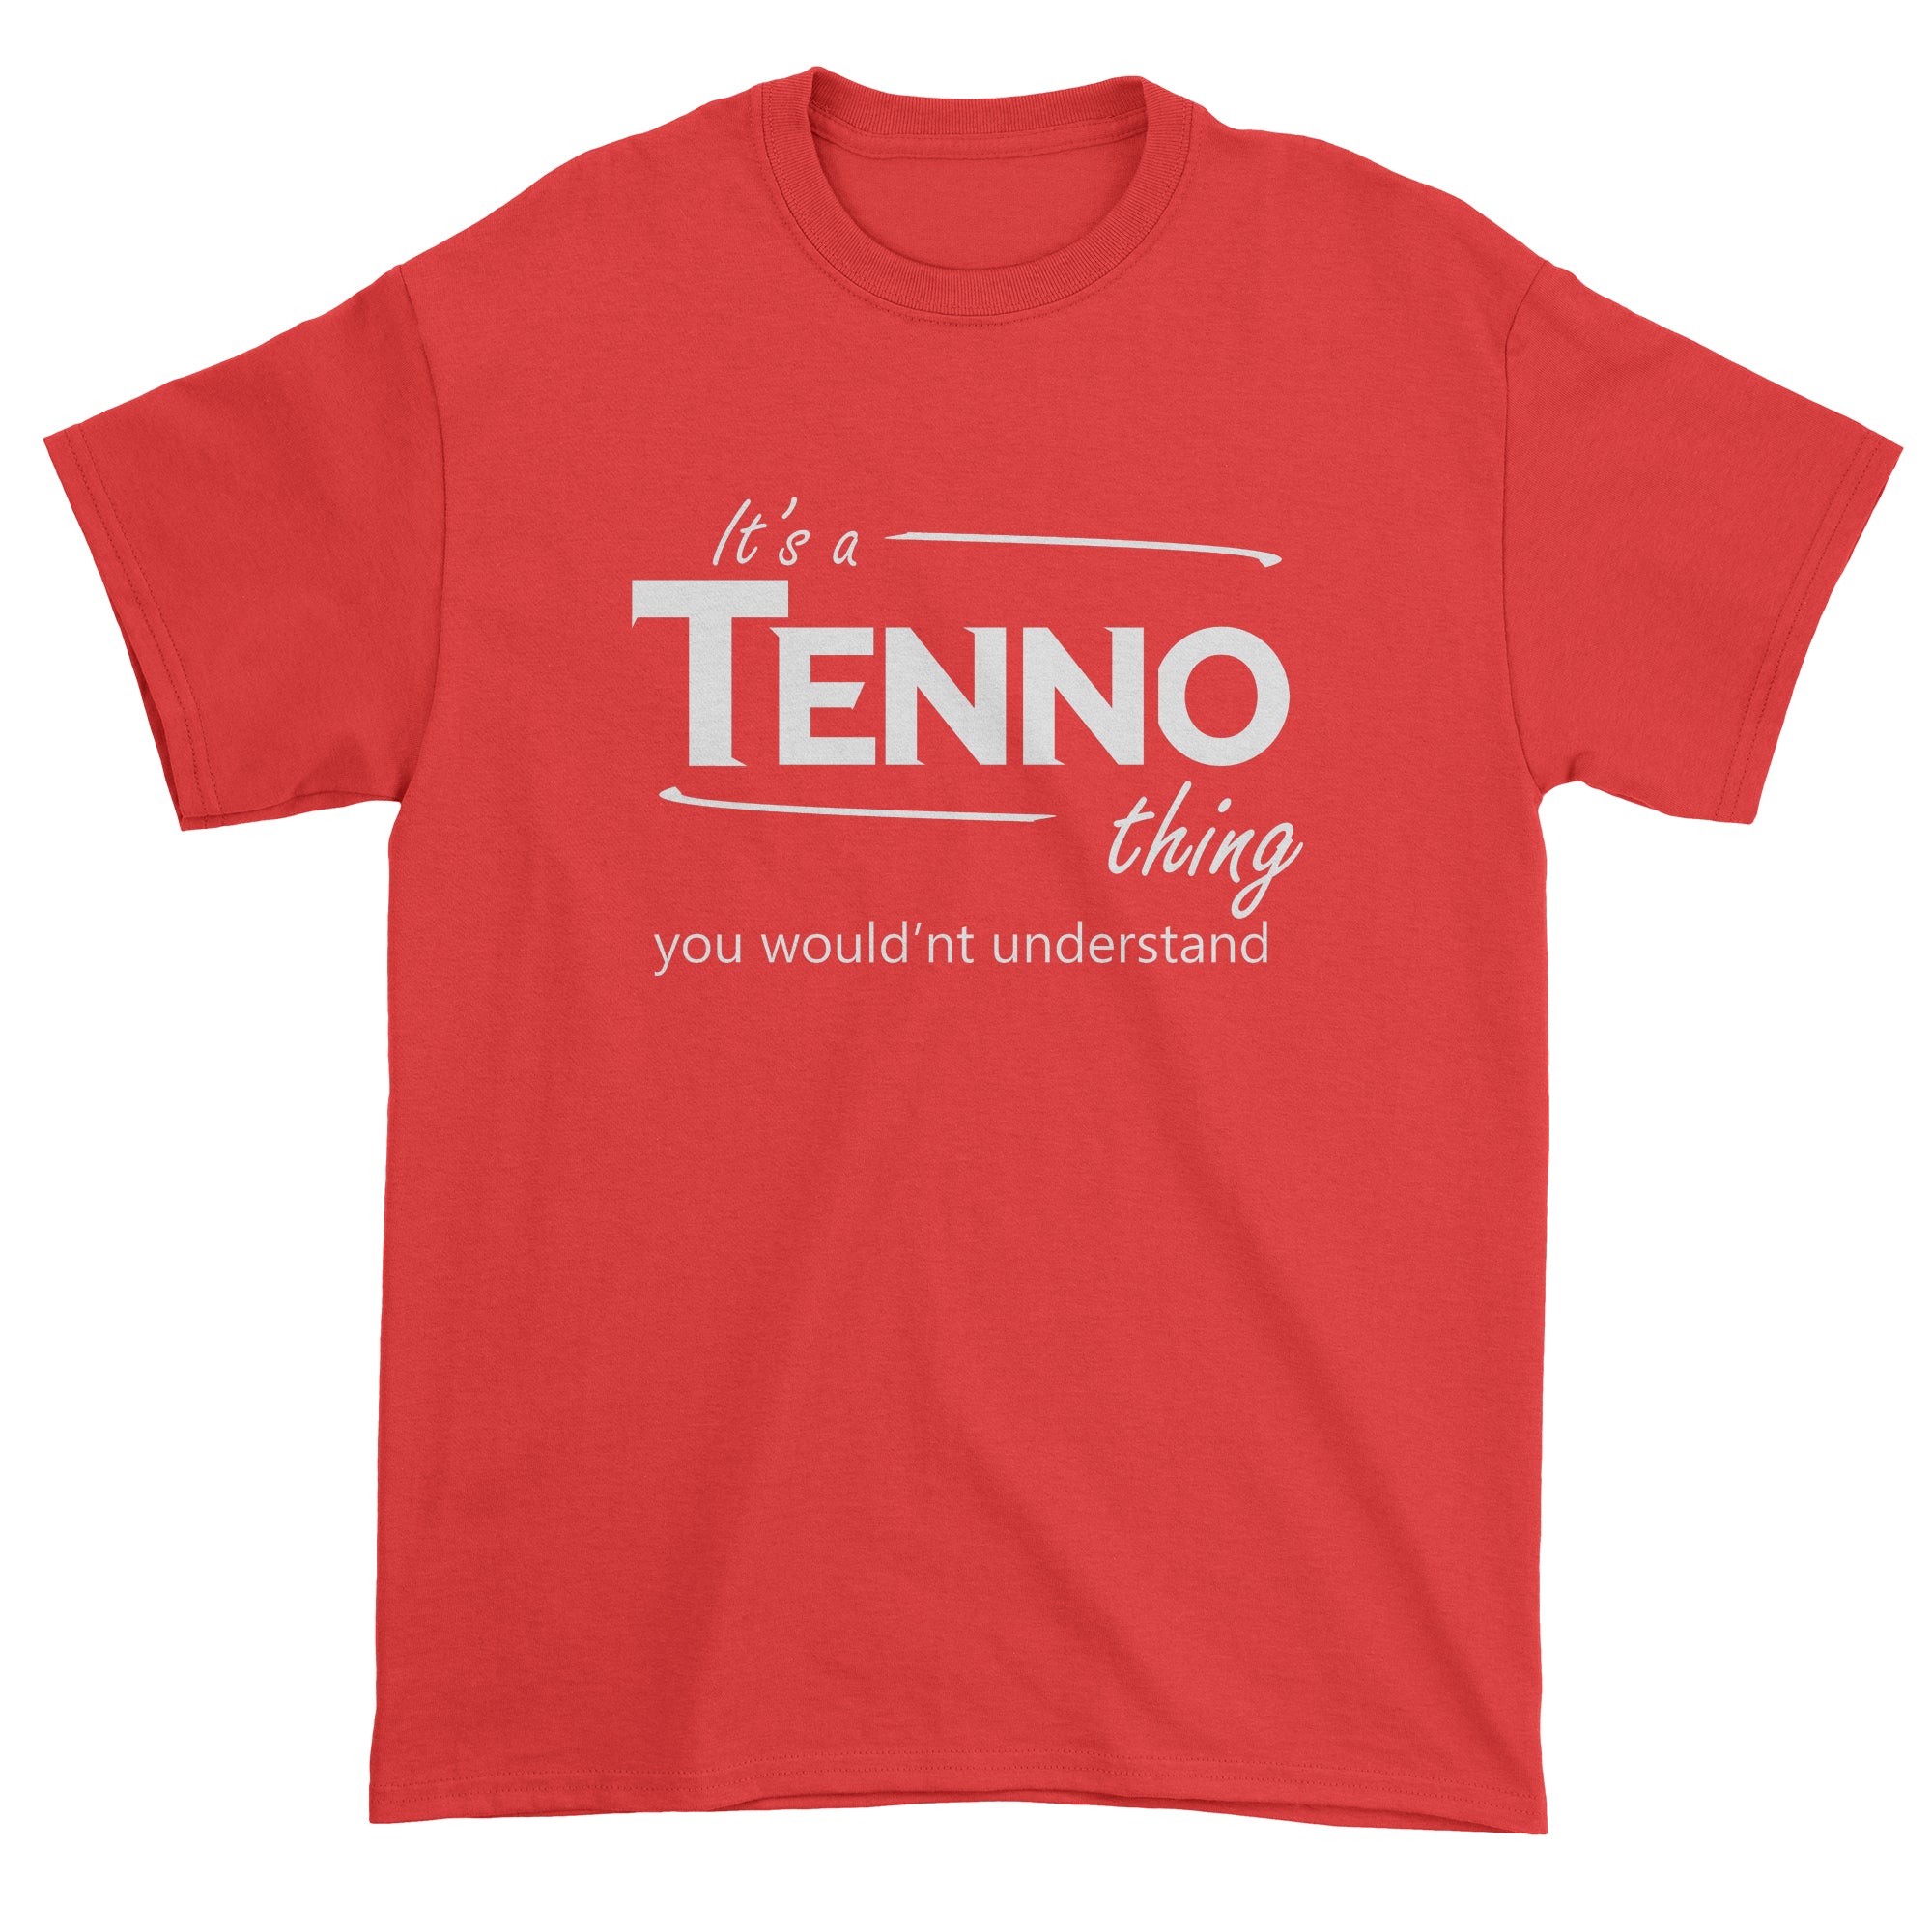 Tenno Race Gamer Men's T-Shirt